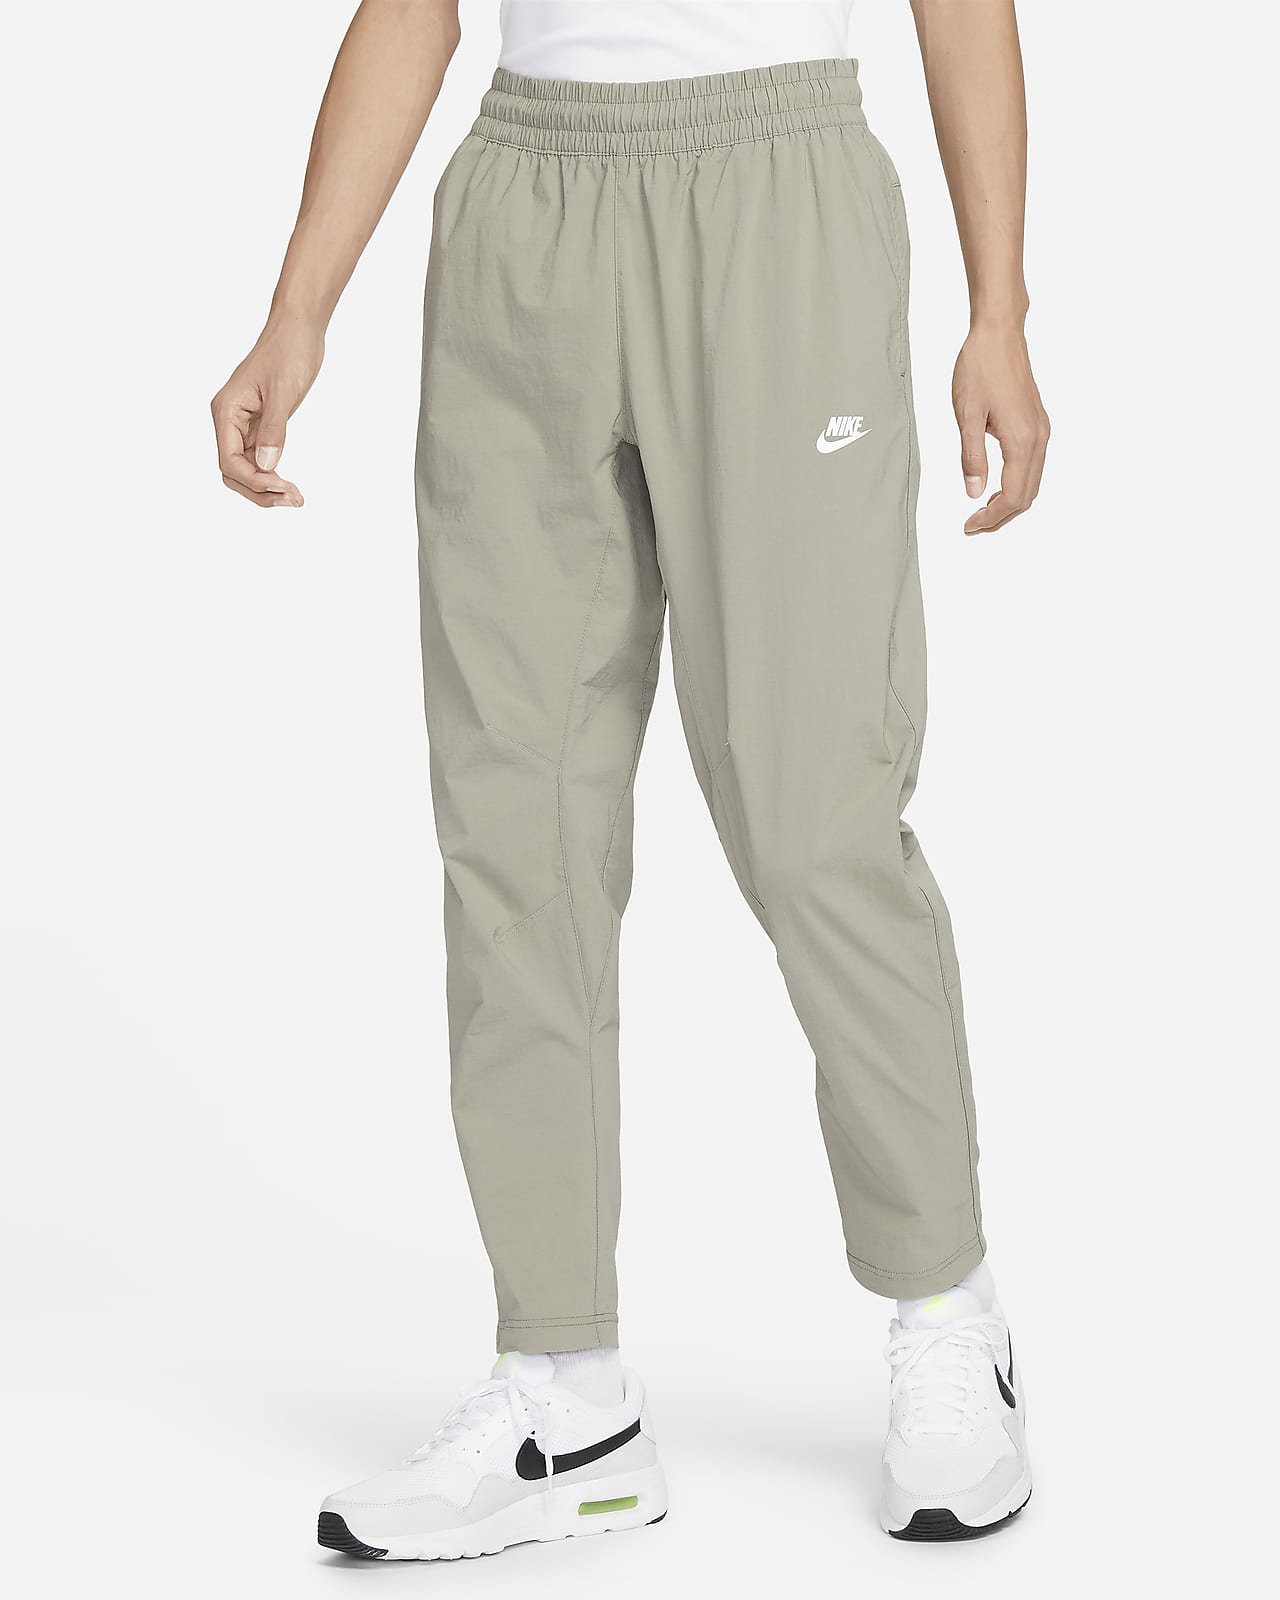 Nike Sportswear Men's Woven Trousers. Nike SG